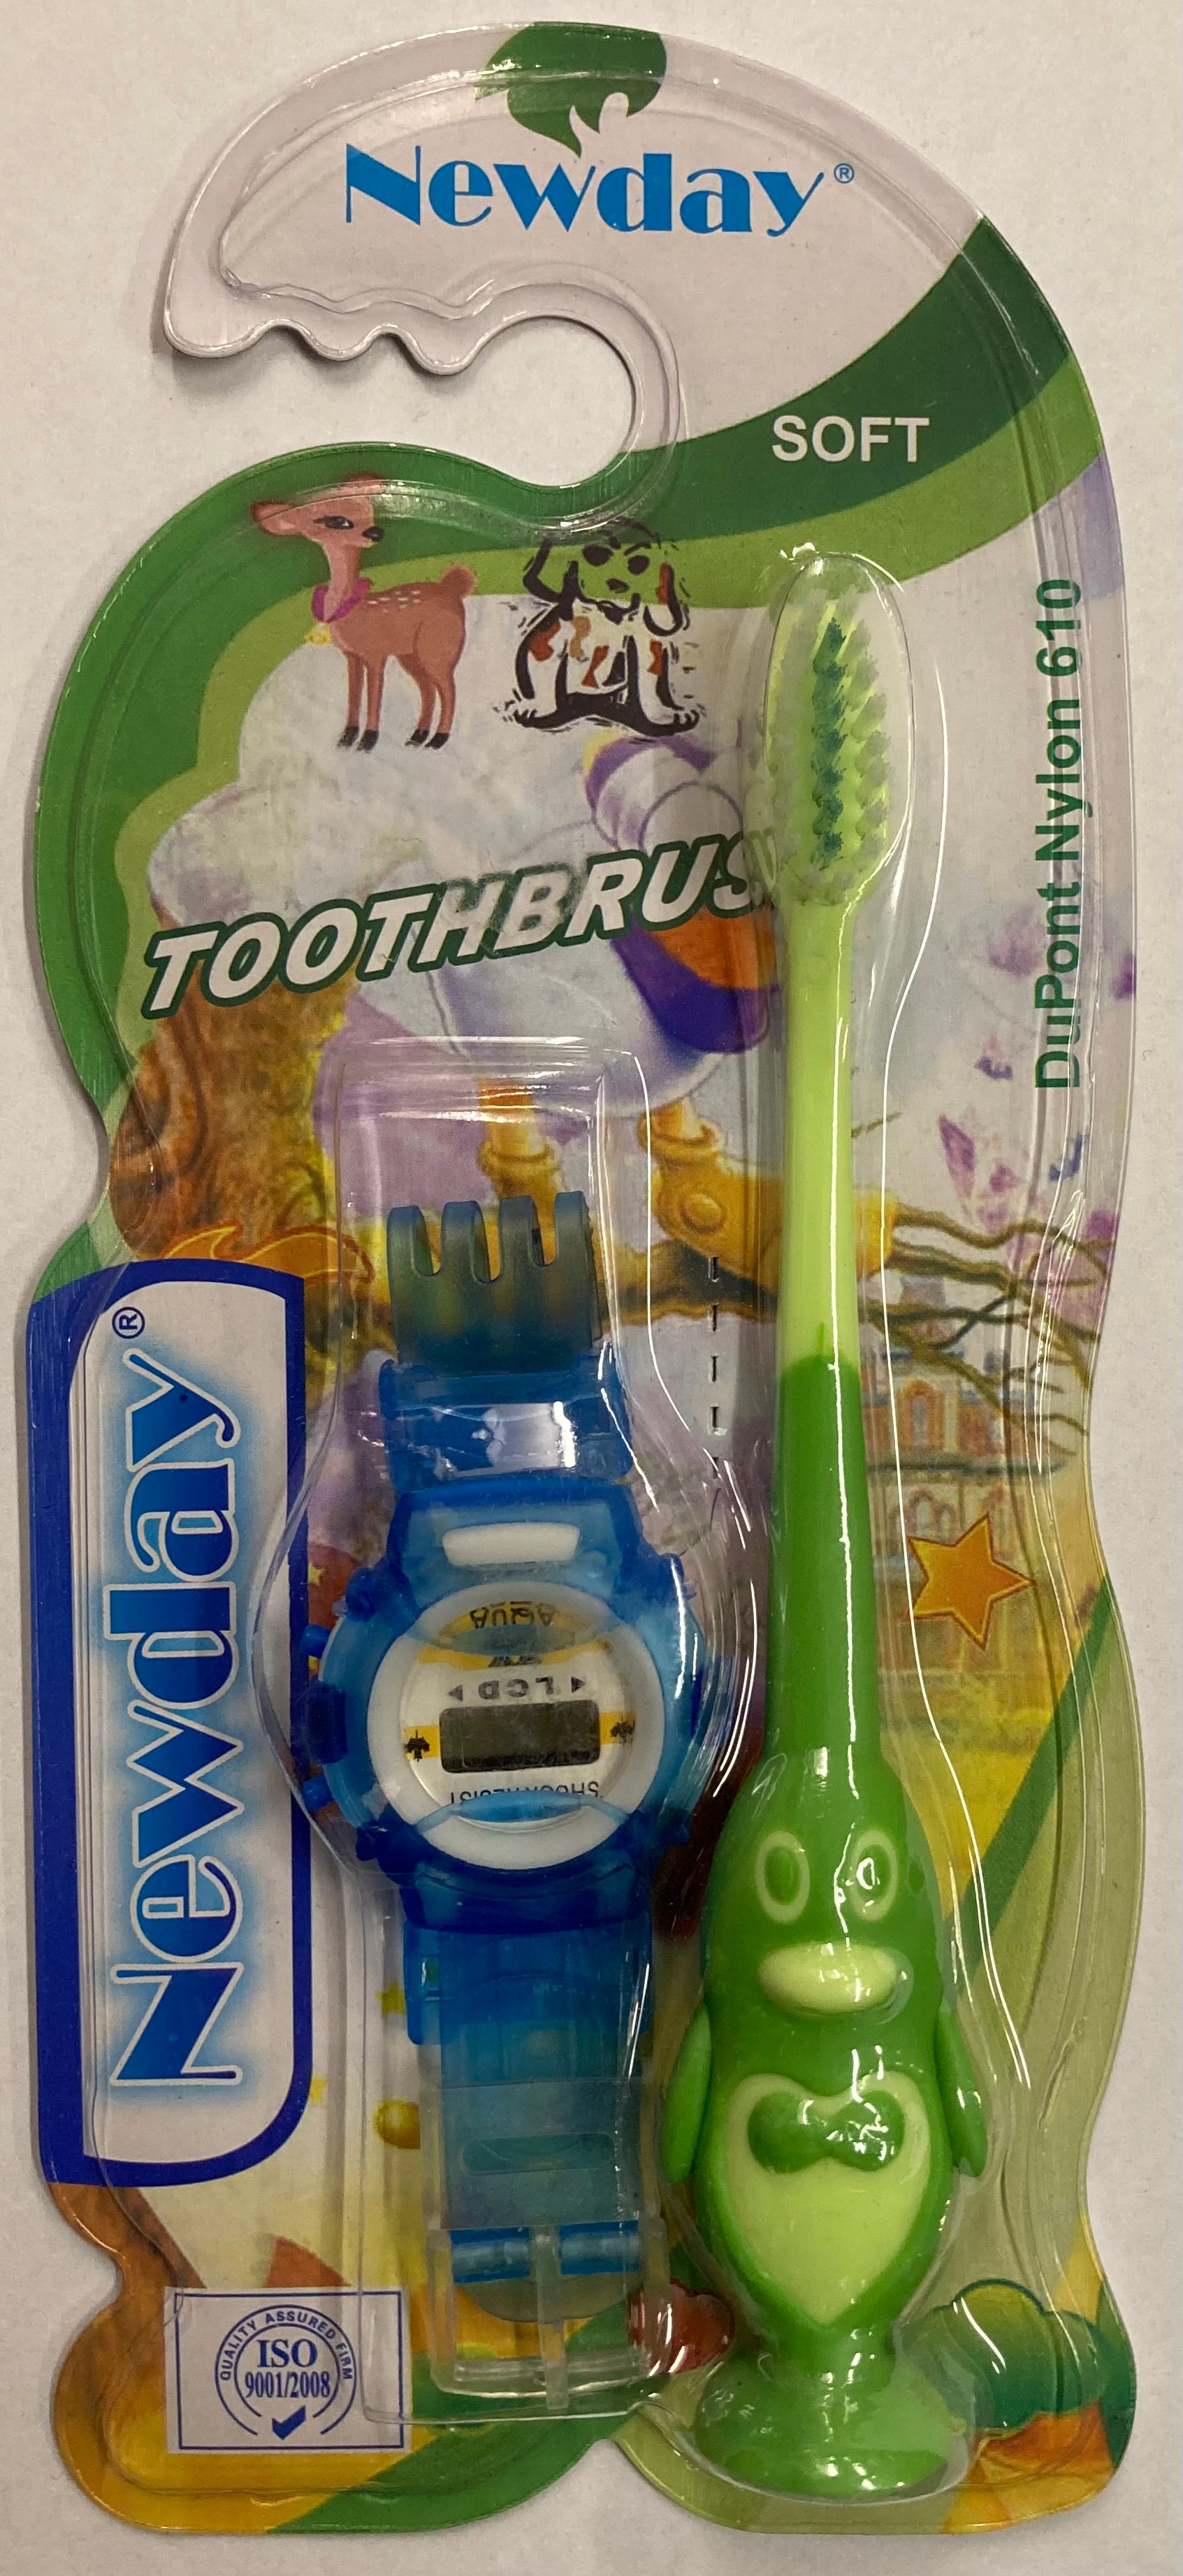 Newday tandbørste og ur